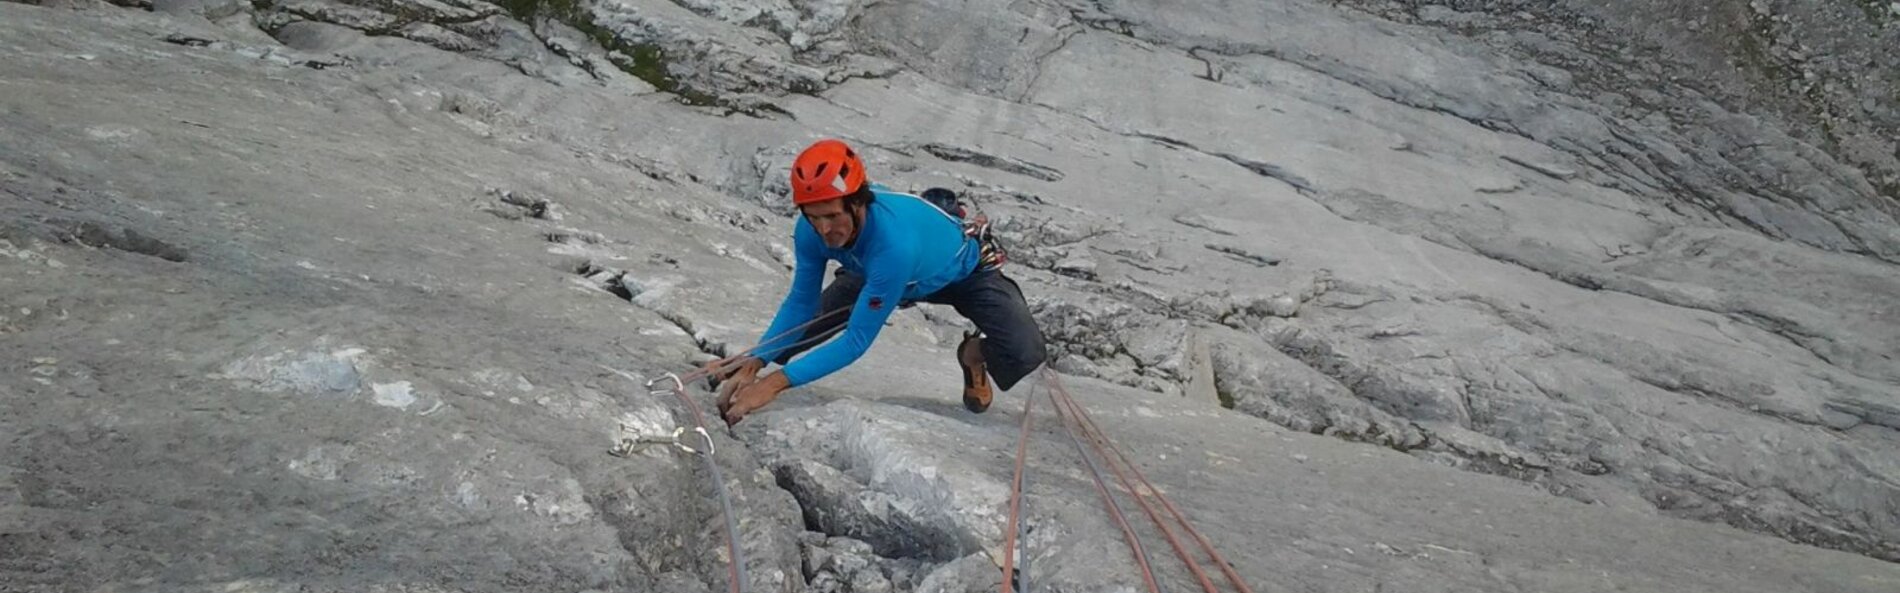 Kletterer in einer Felswand mit Seilen gesichert.